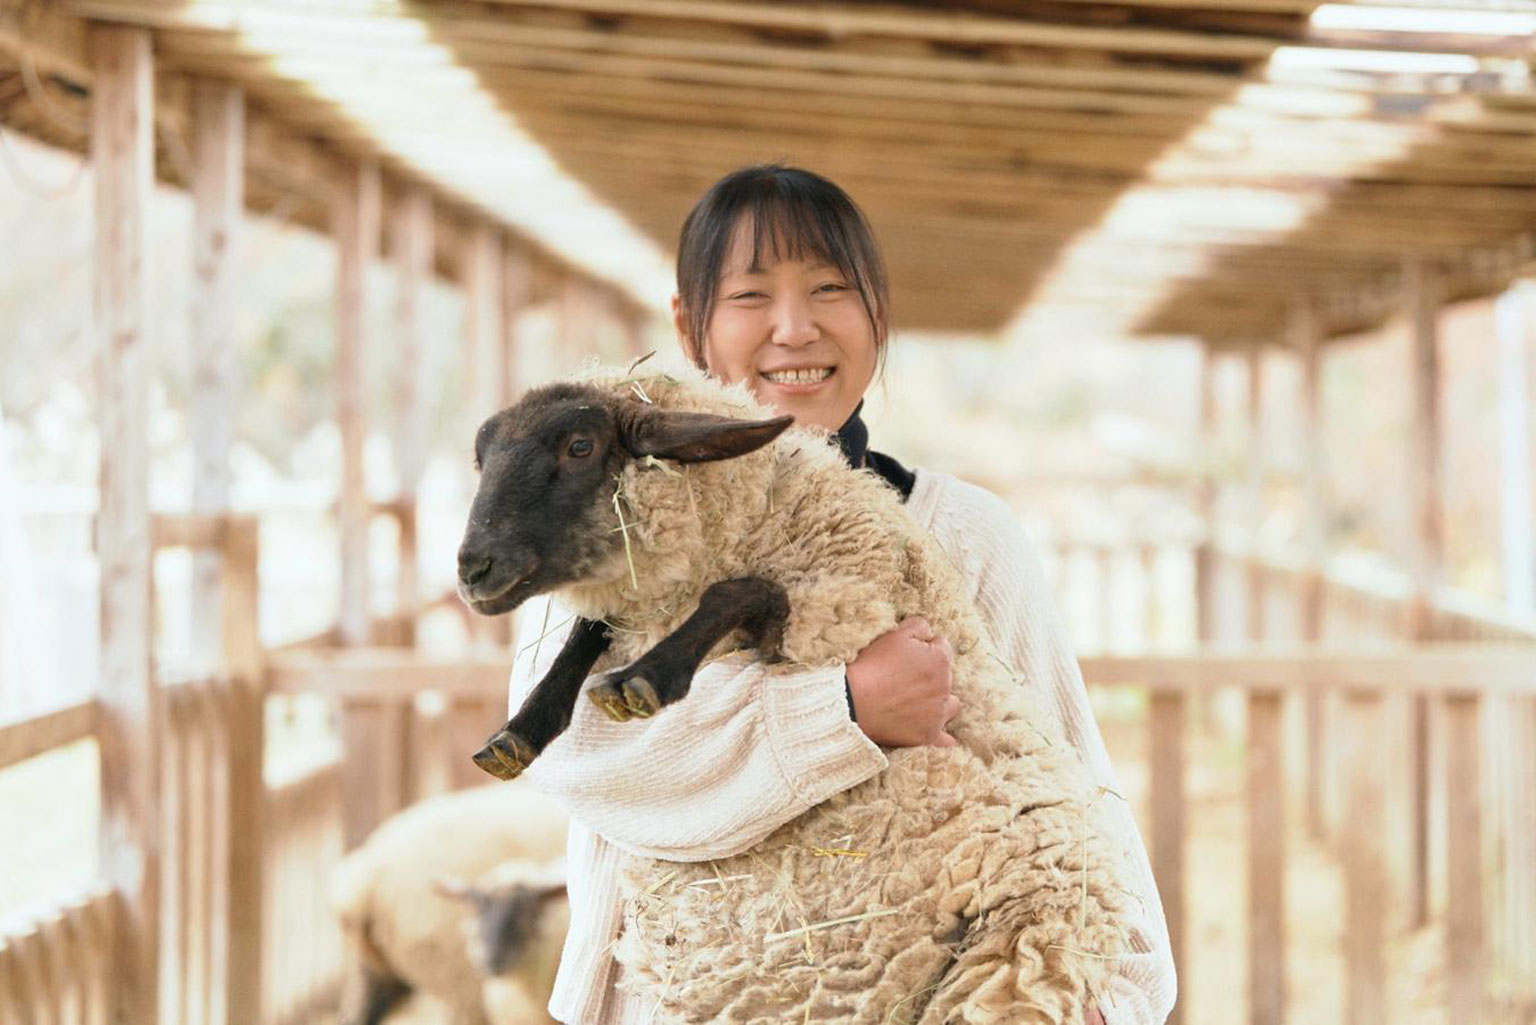 解放され、自由になると人生は面白くなる。福島の羊飼いの歴史をつなごうとした吉田睦美さんは、なぜか今、福島と北海道を行ったり来たりしている